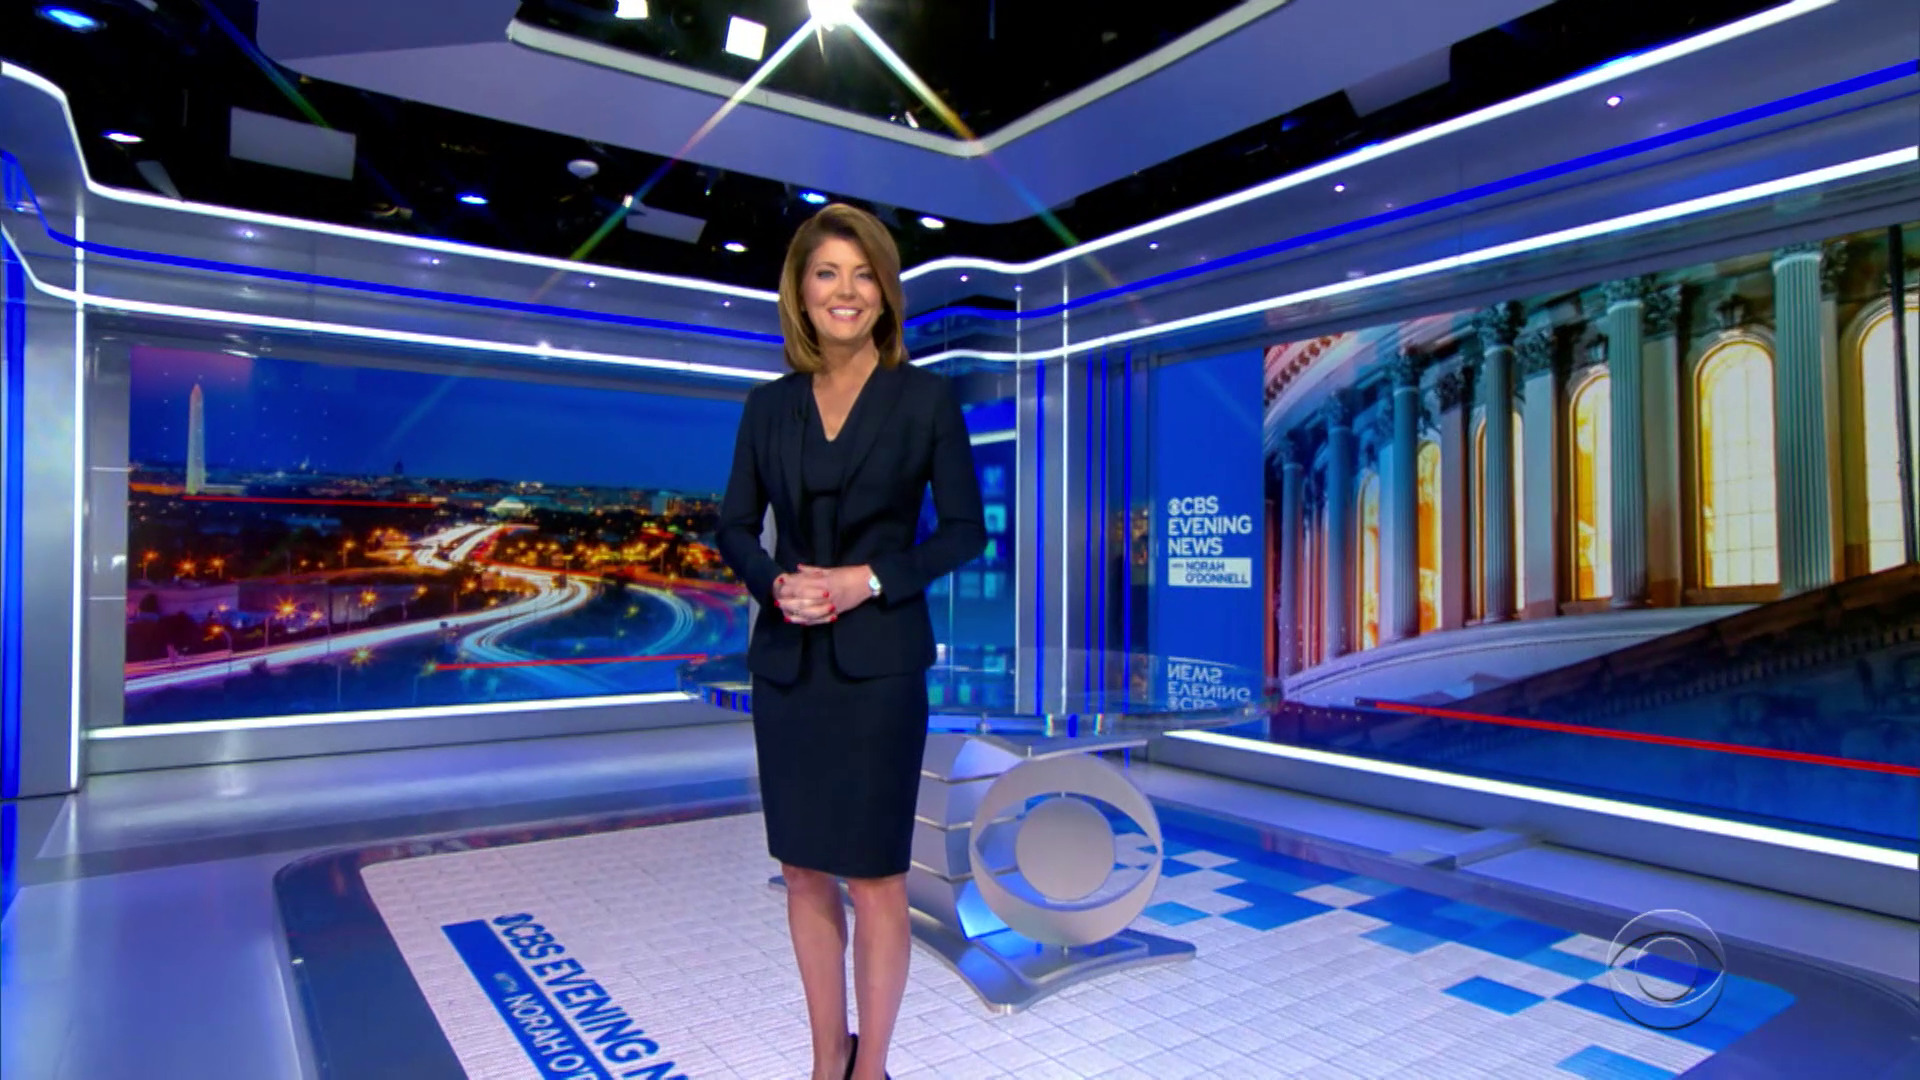 Watch CBS Evening News "CBS Evening News" moves to D.C. Full show on CBS